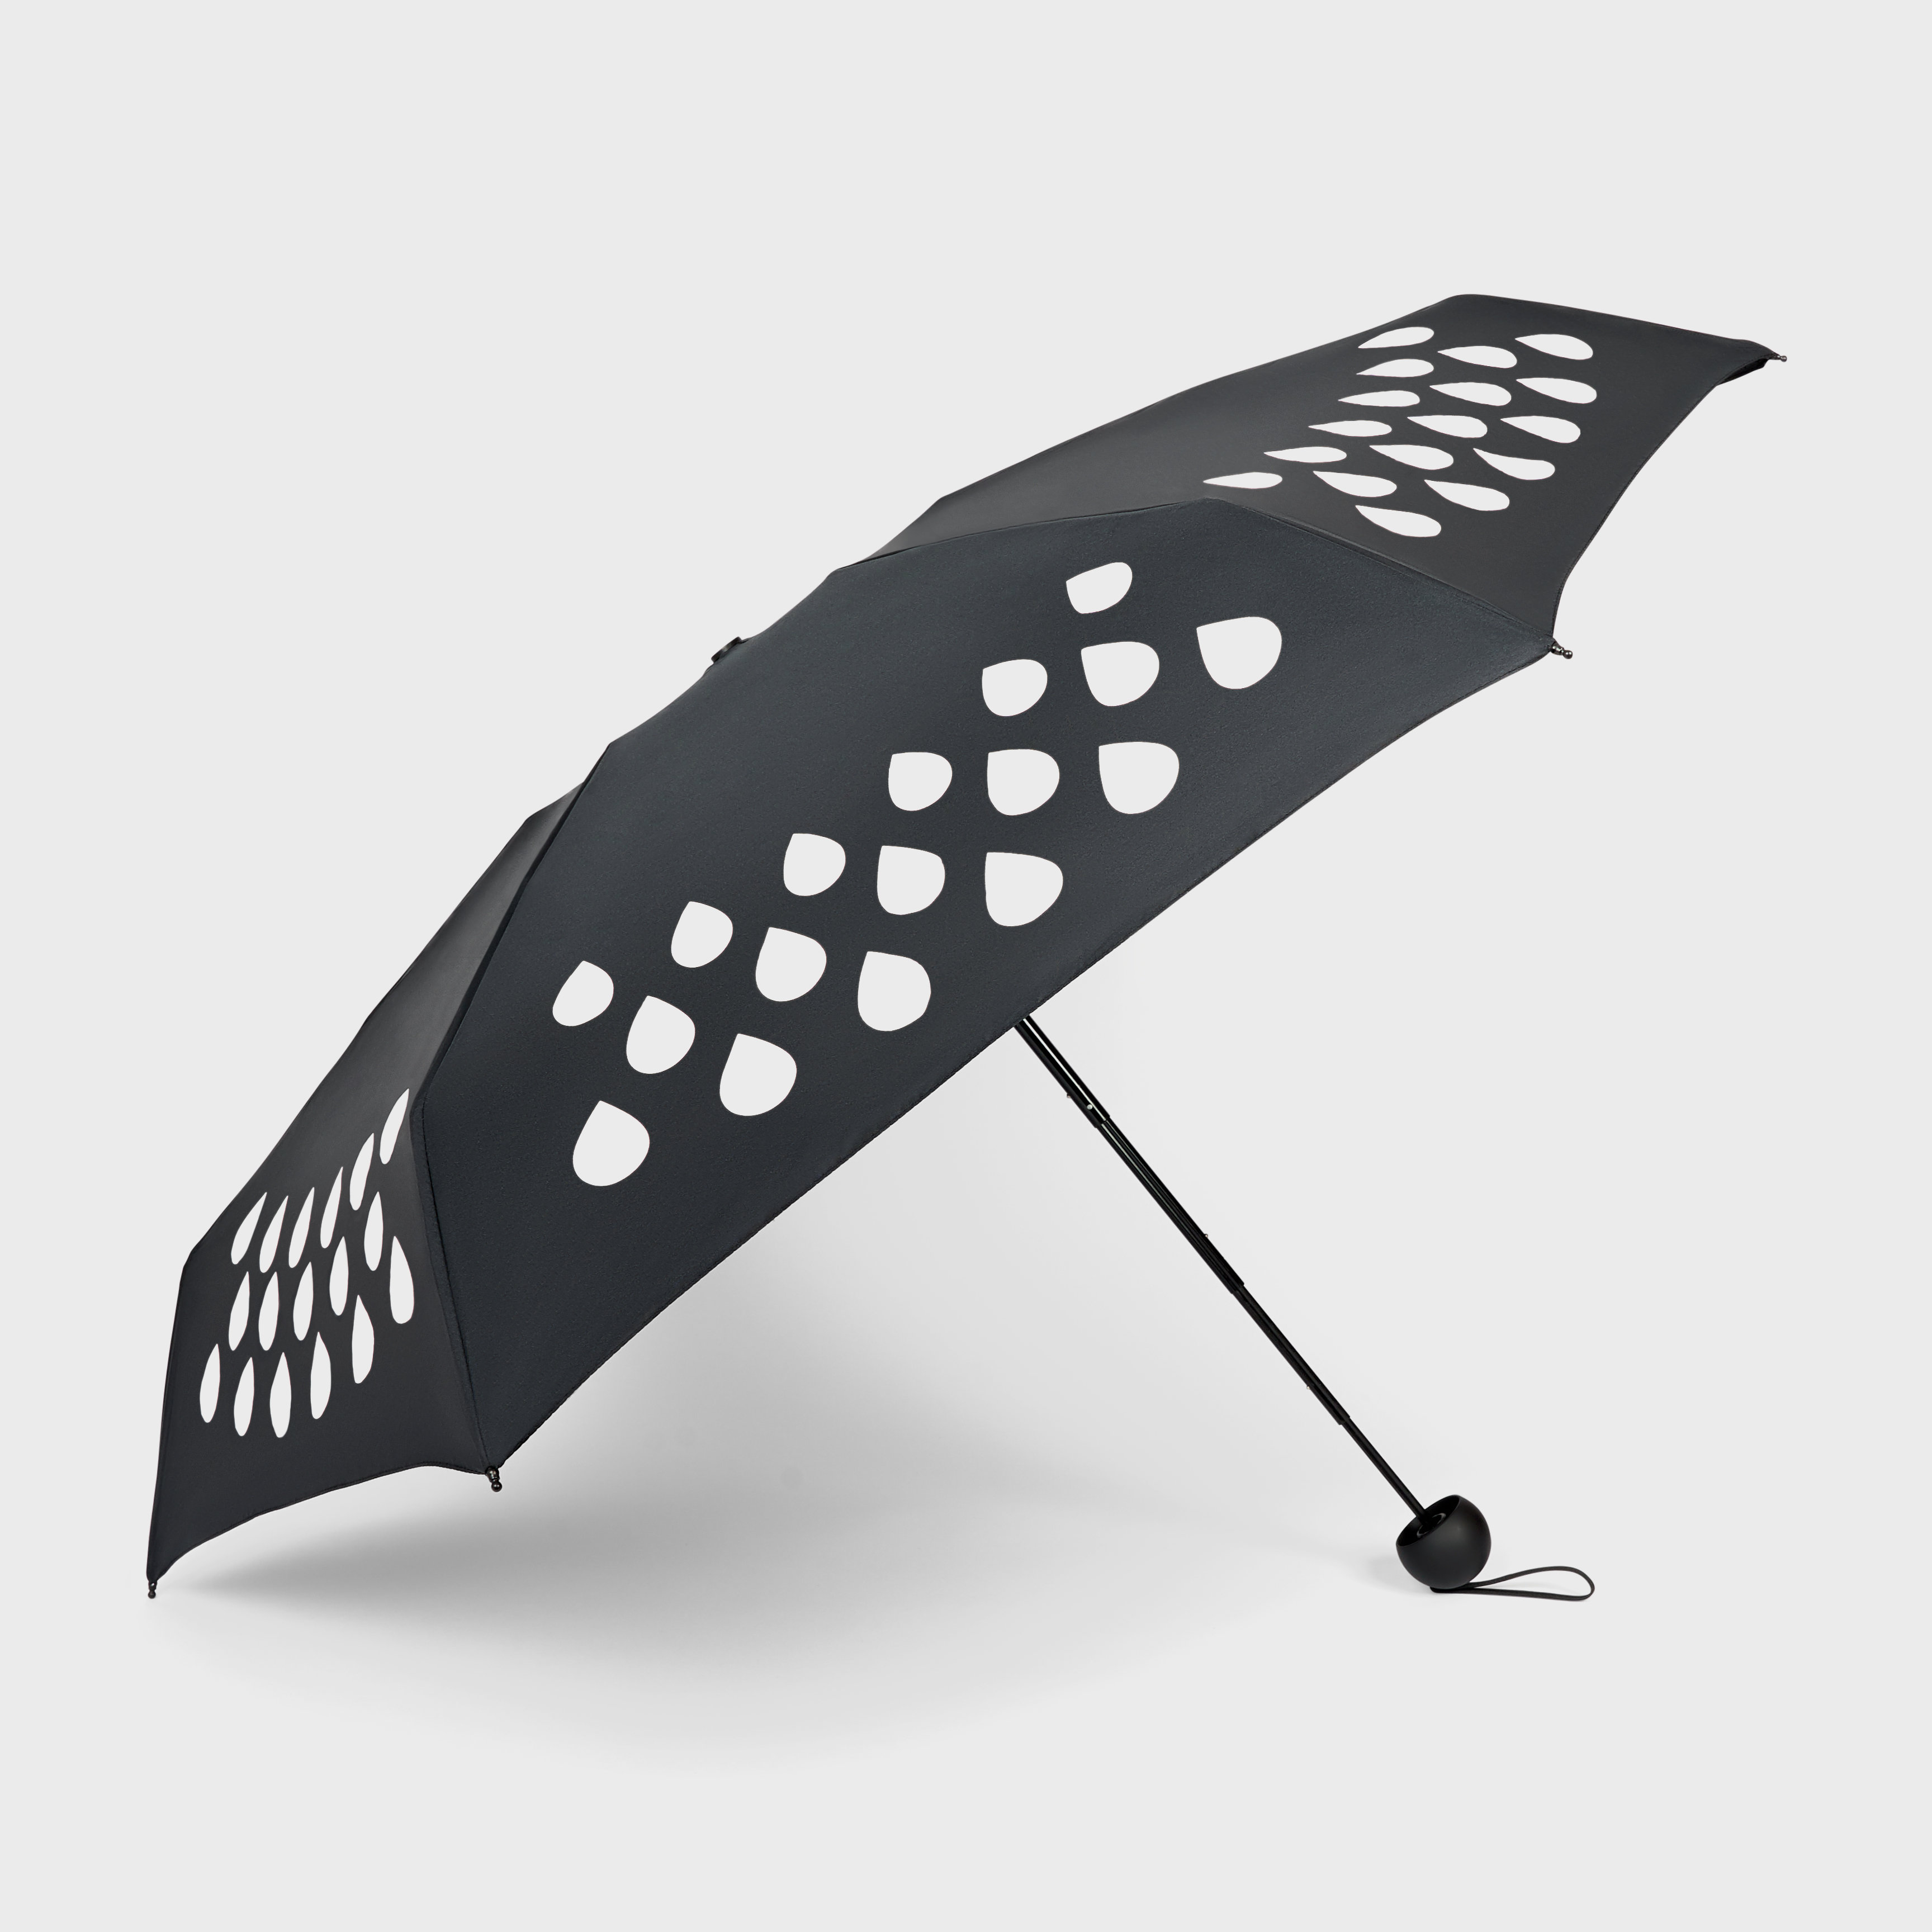 Compact Colour Change Umbrella : Changes colour when it rains.